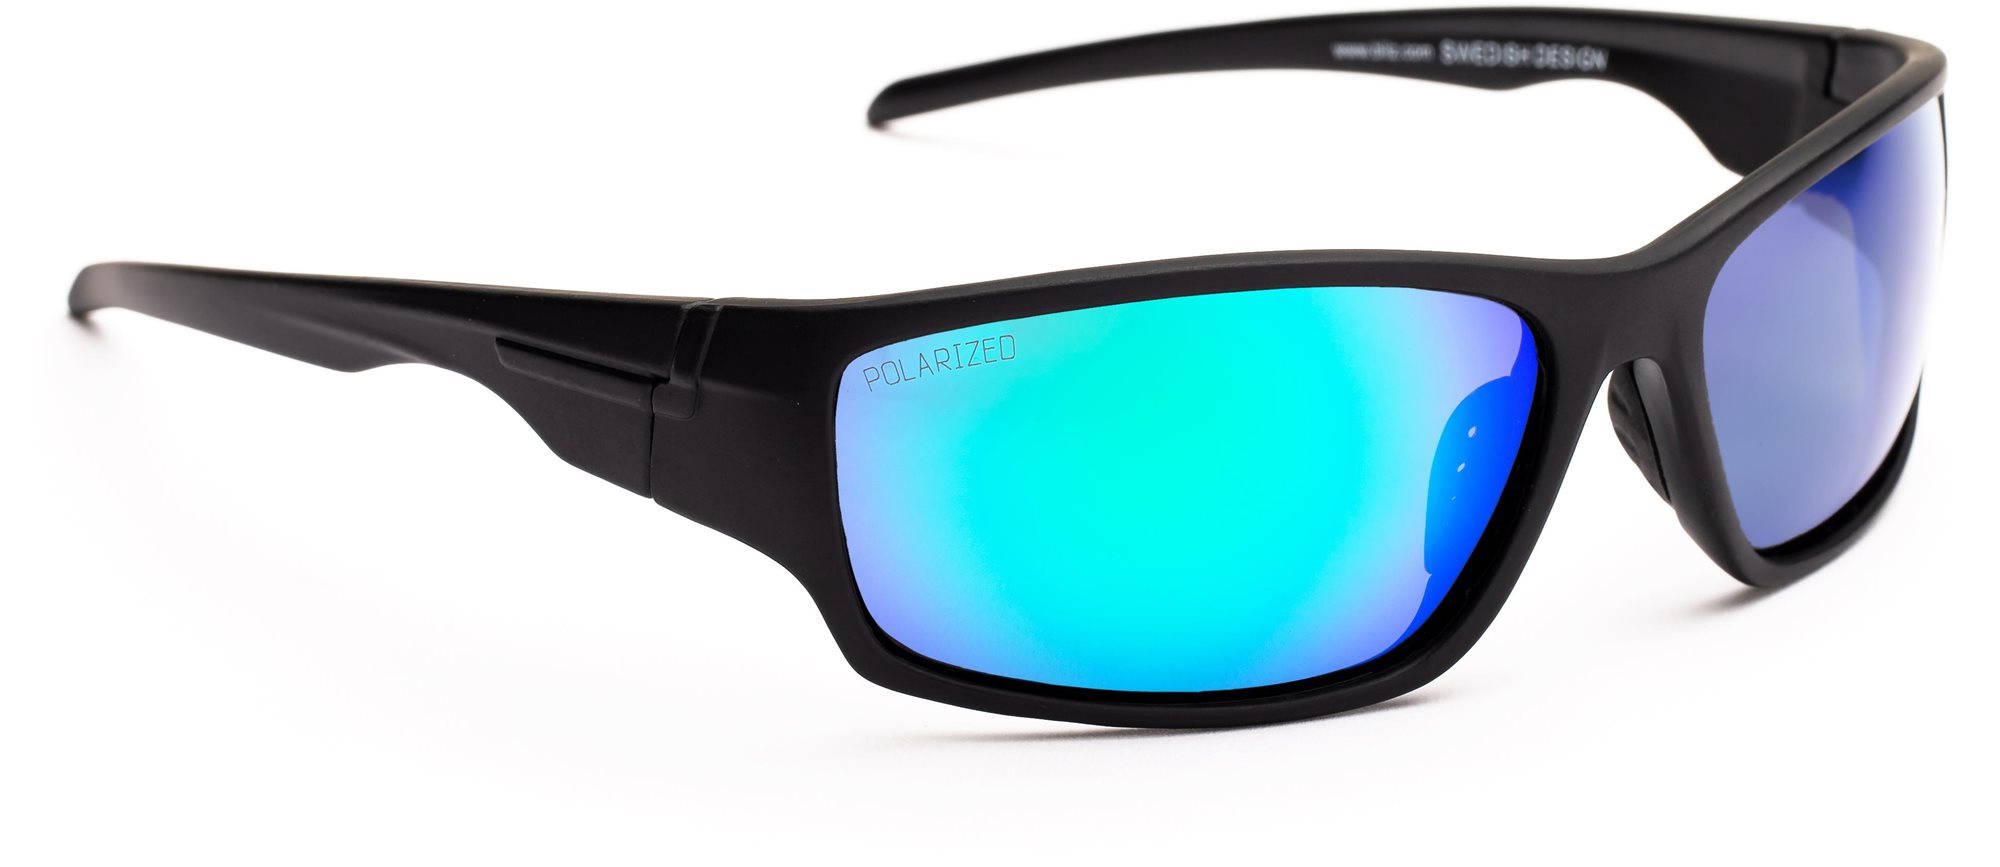 Kerékpáros szemüveg Bliz Polarized C - 51915-13